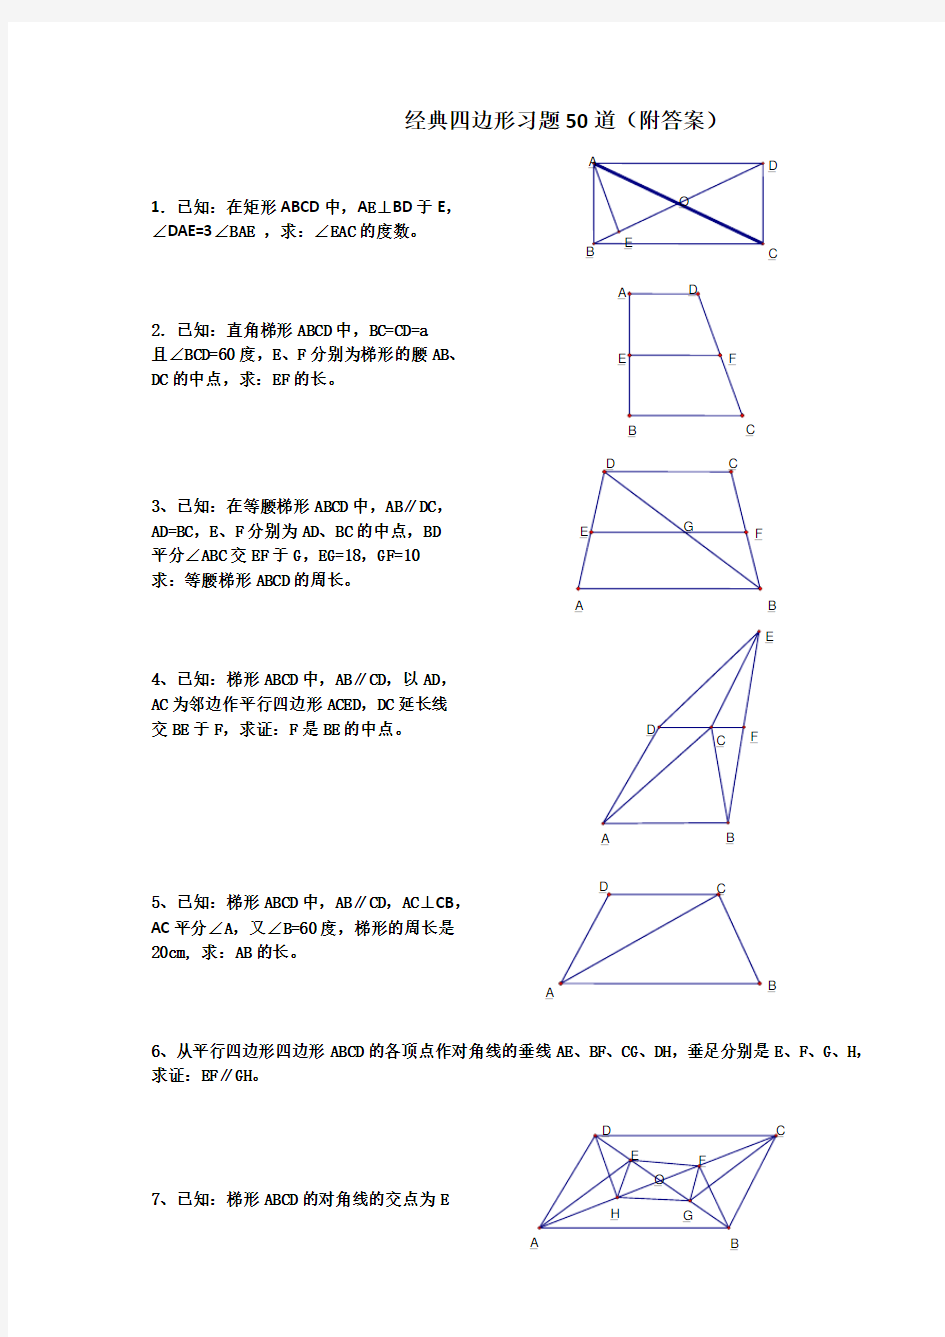 (完整)初中数学经典四边形习题50道(附答案)